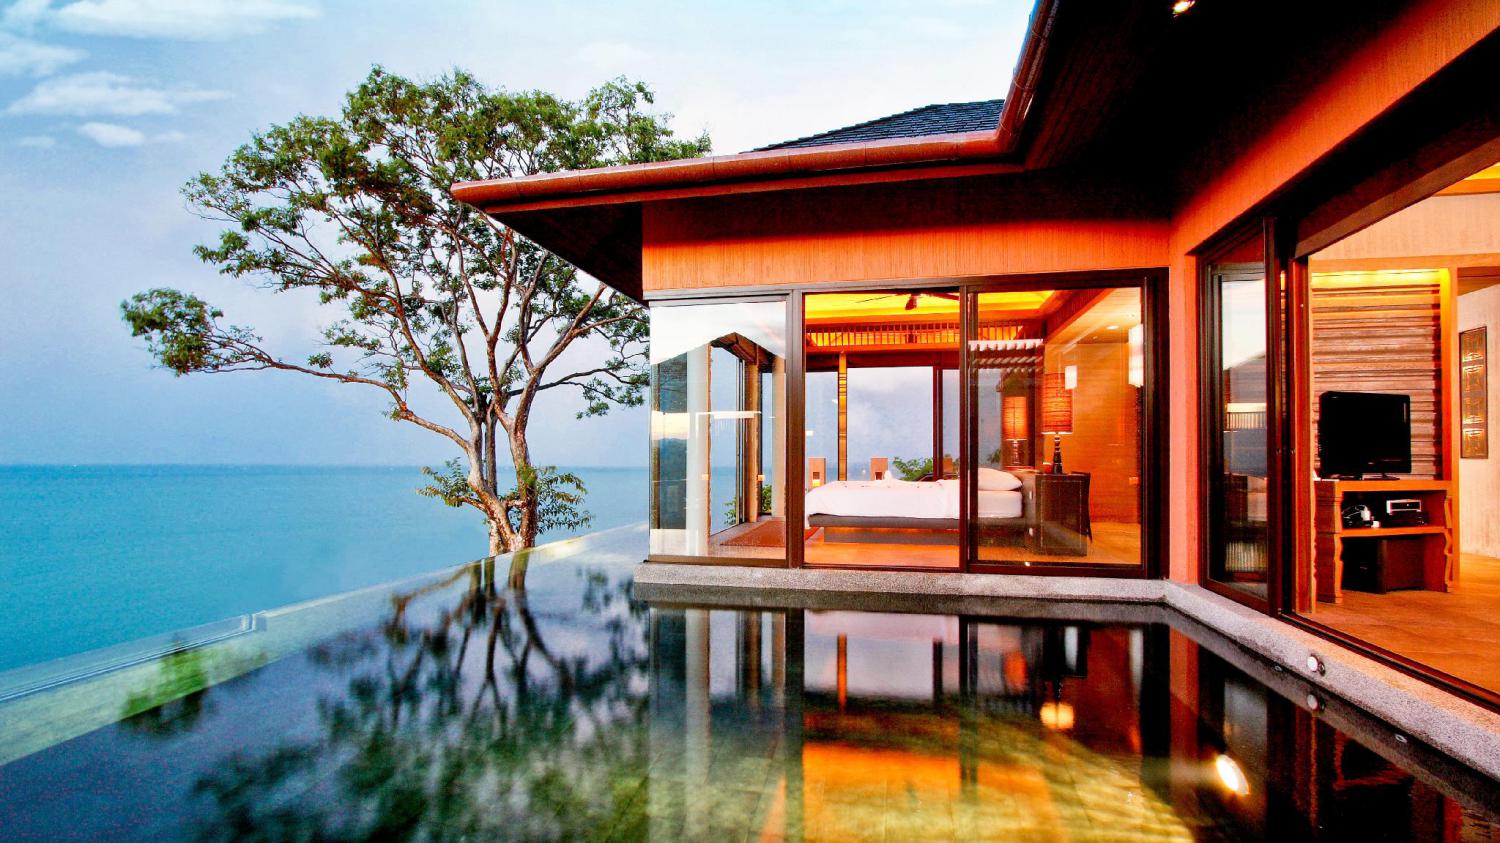 Sri Panwa Phuket Luxury Pool Villa Hotel - Image 1